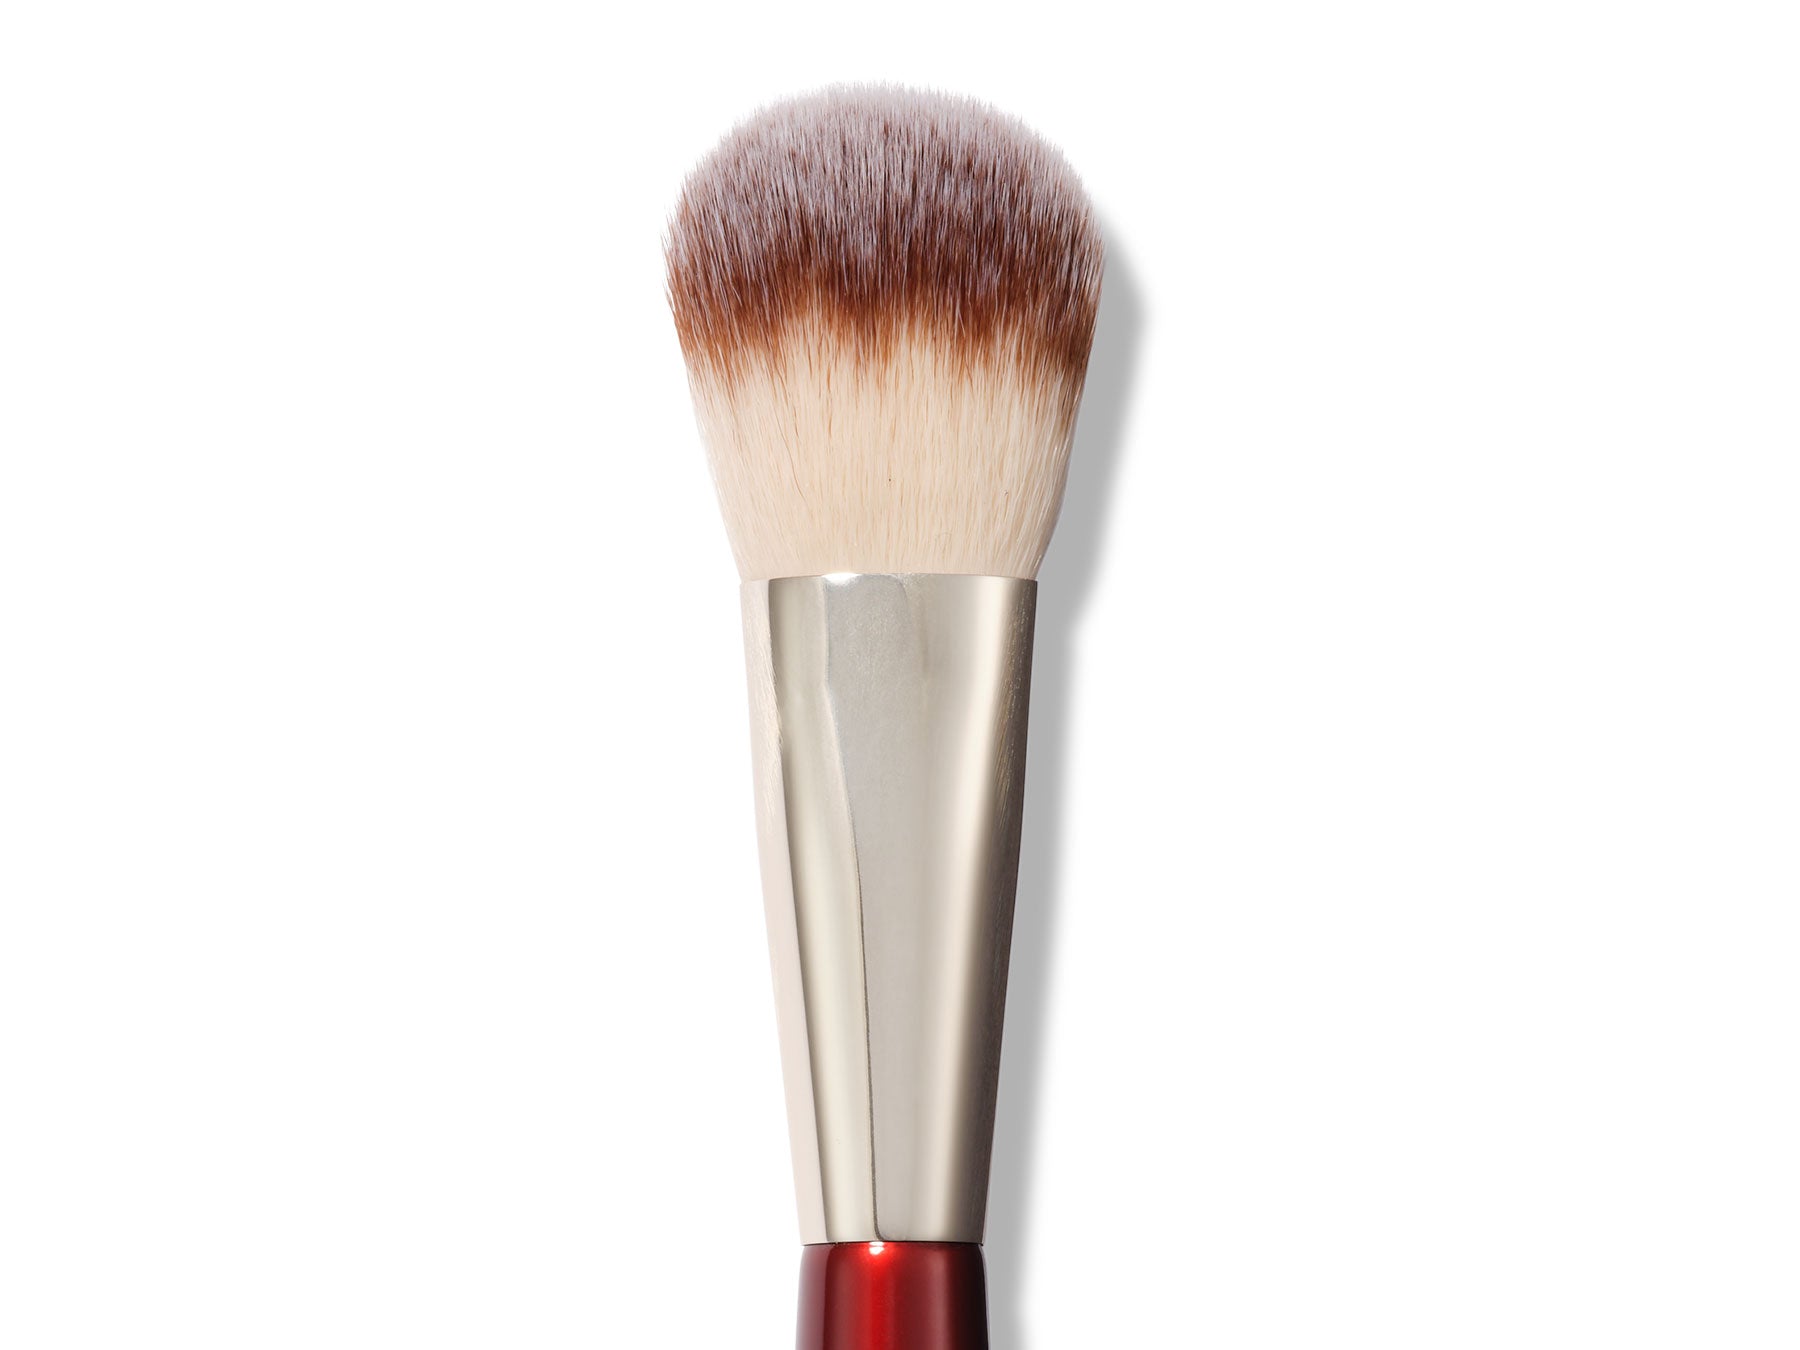 Travel Makeup Brush Holder, Eurobuy Half-Clear Travel Make-up